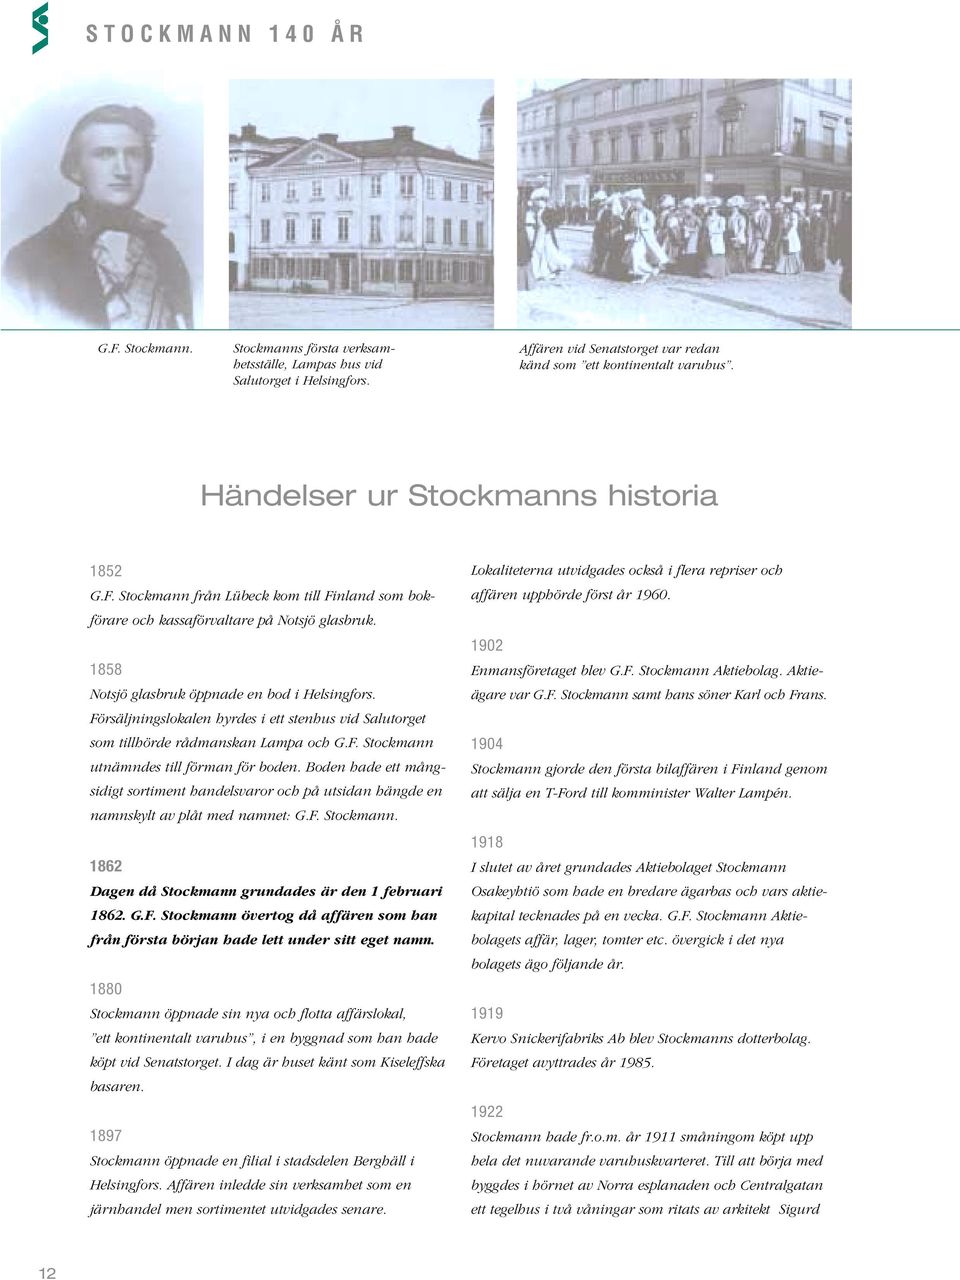 Försäljningslokalen hyrdes i ett stenhus vid Salutorget som tillhörde rådmanskan Lampa och G.F. Stockmann utnämndes till förman för boden.